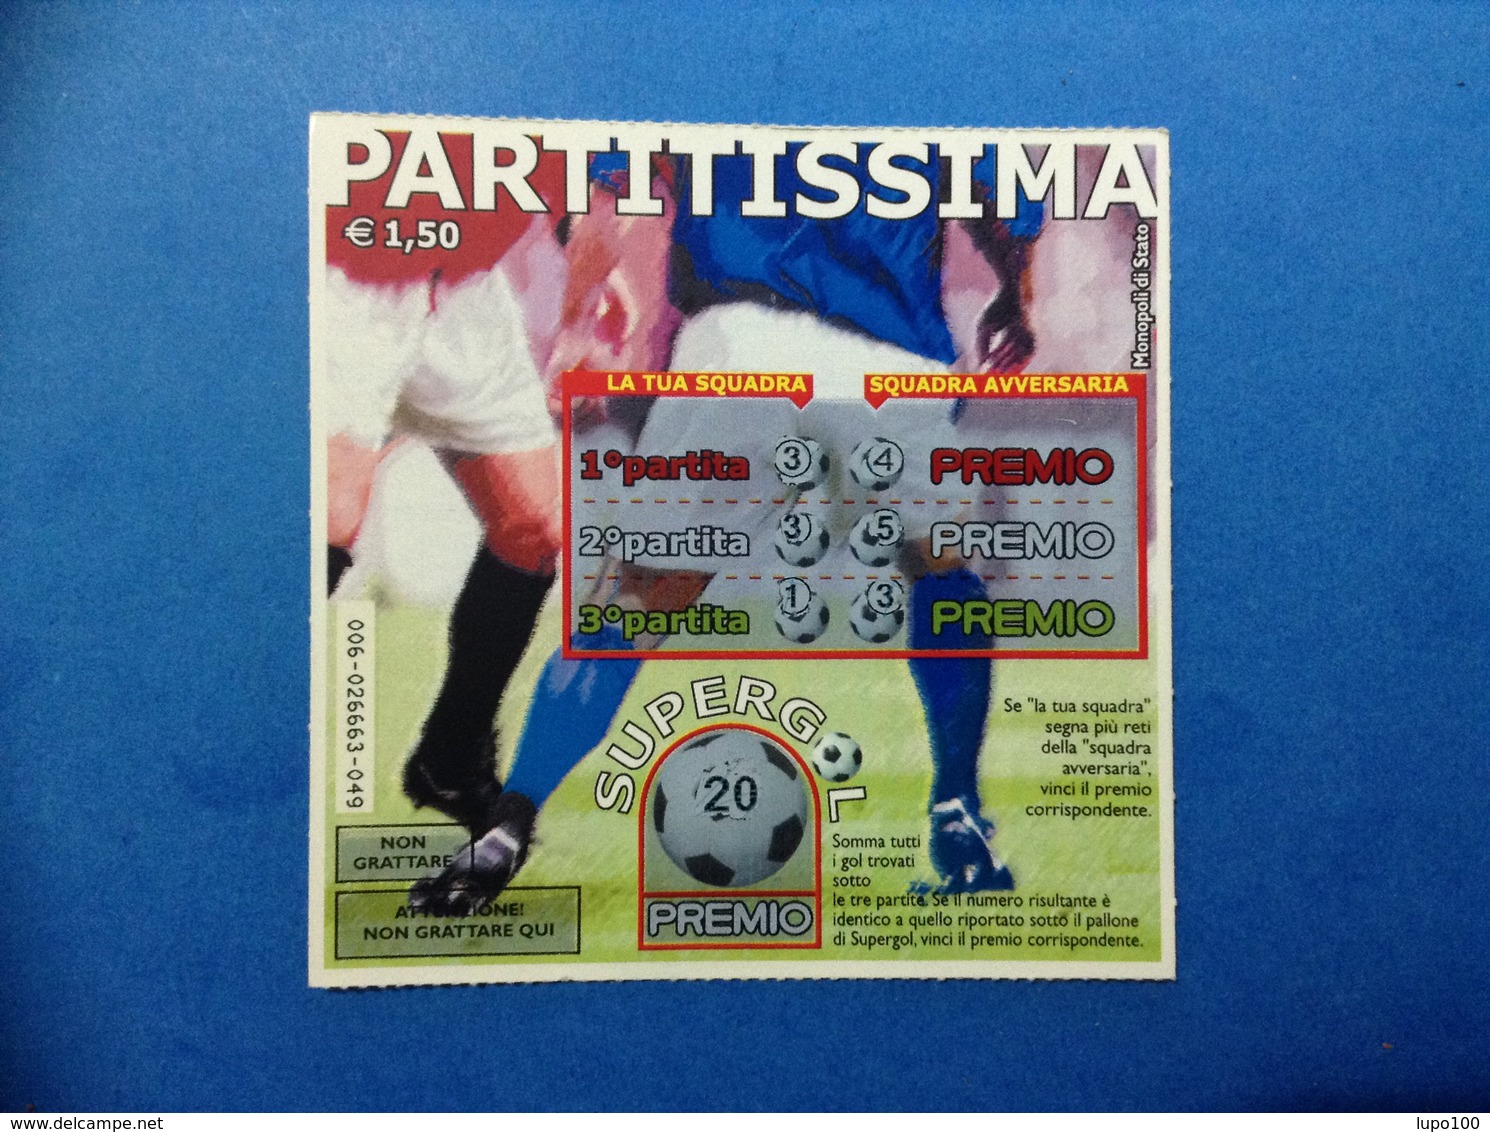 BIGLIETTO LOTTERIA ISTANTANEA GRATTA E VINCI USATO € 1,50 PARTITISSIMA - Lottery Tickets